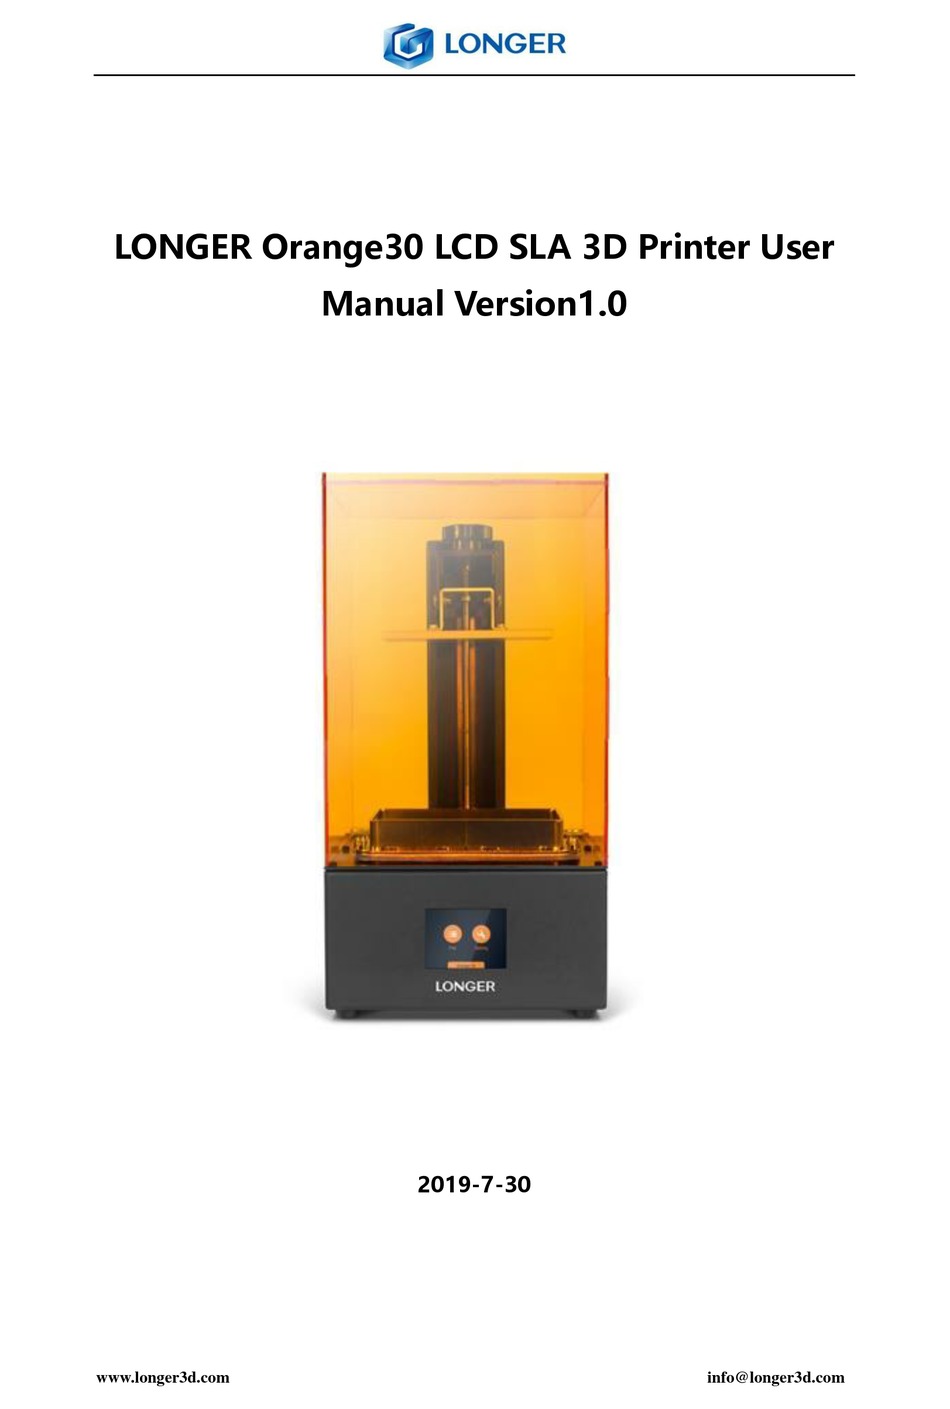 Longer Orange30 